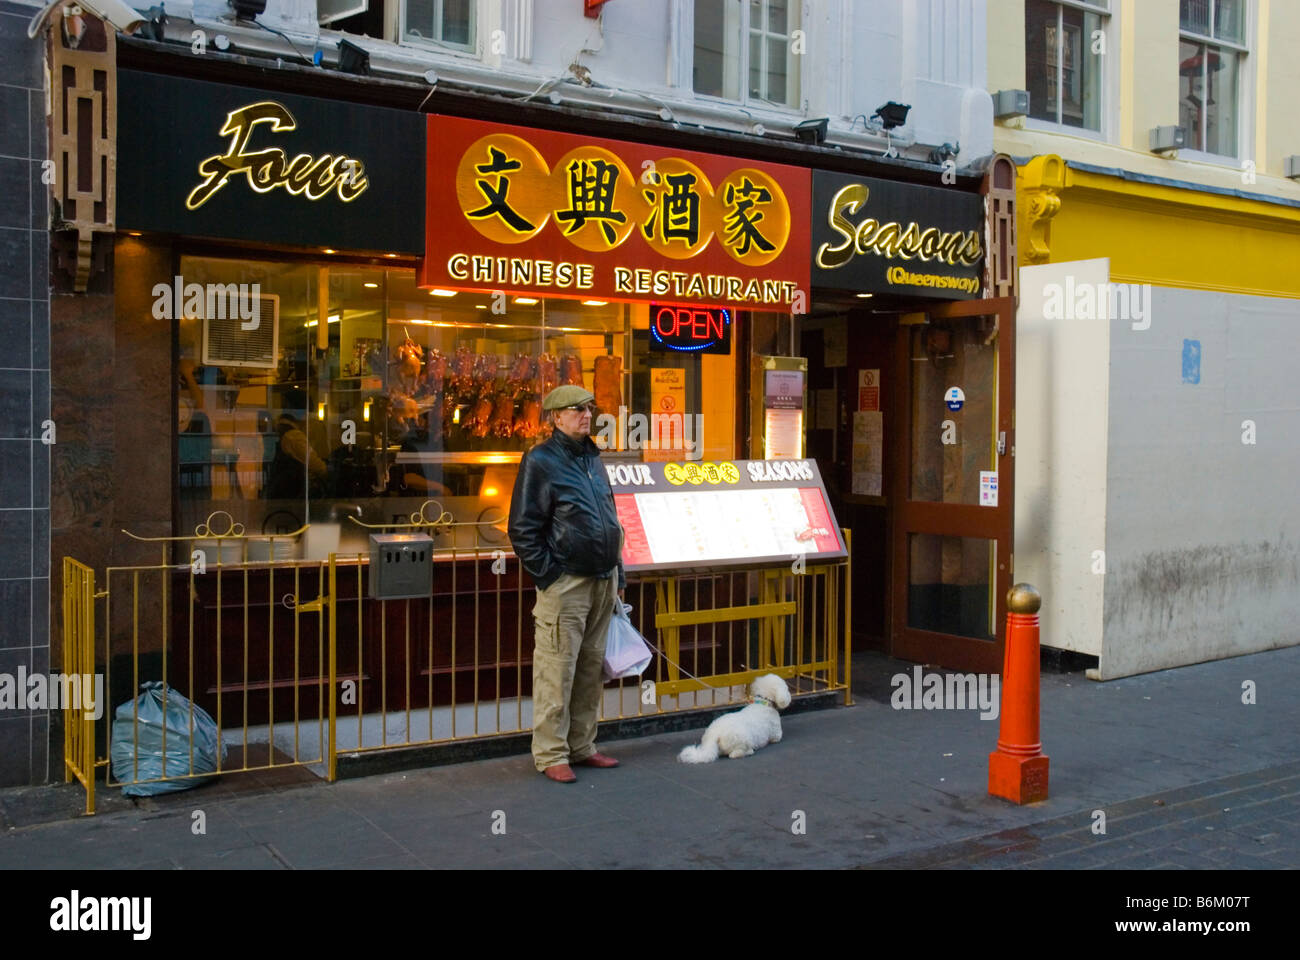 L'homme et un chien en face d'un restaurant dans Gerrard Street dans le quartier chinois dans le centre de Londres, Angleterre, Royaume-Uni Banque D'Images